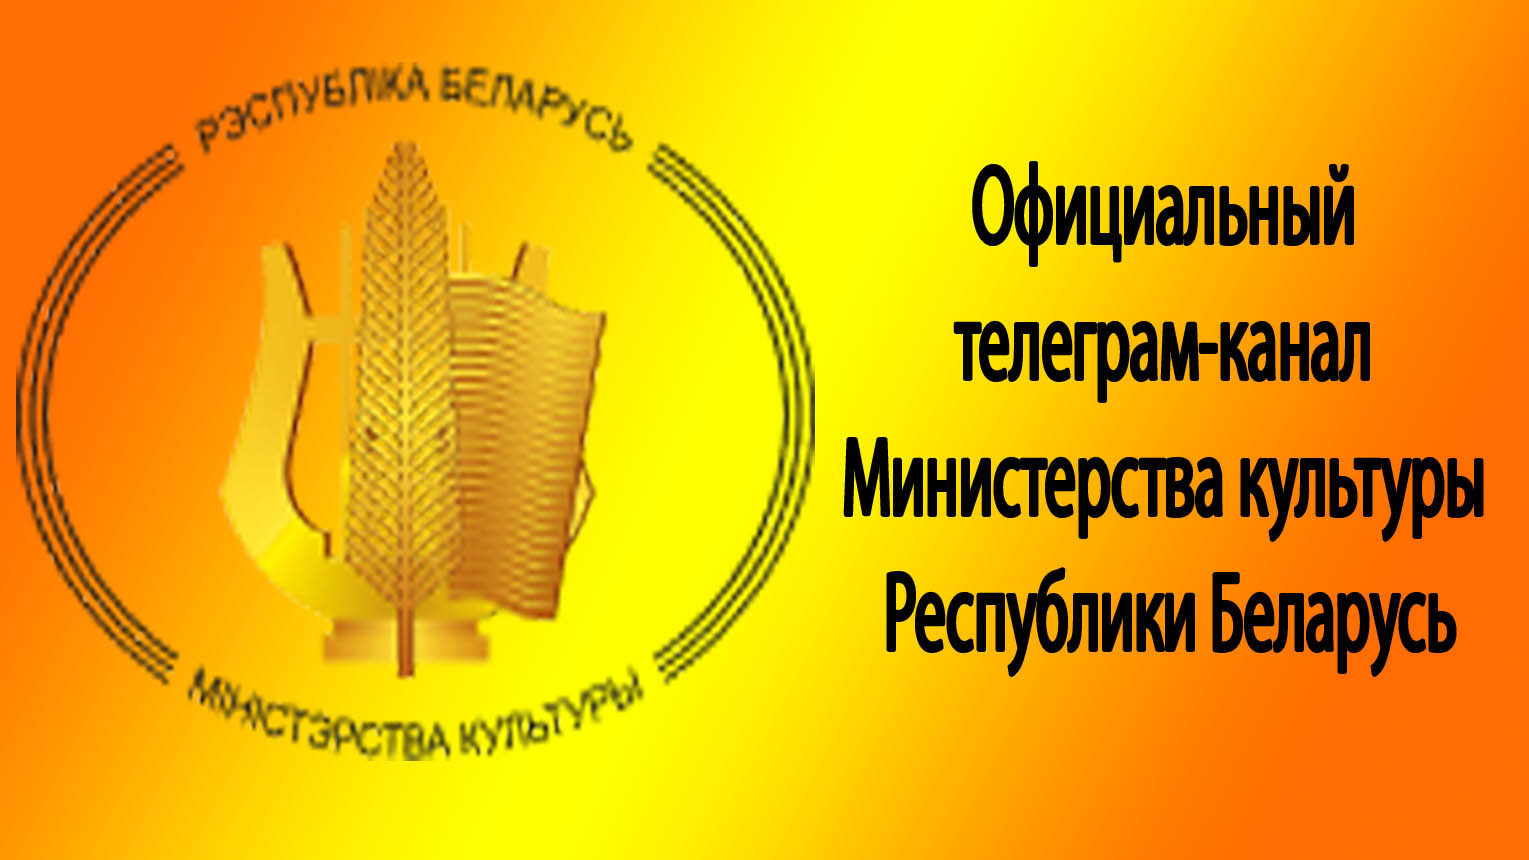 Телеграм-канал Министерства культуры Республики Беларусь